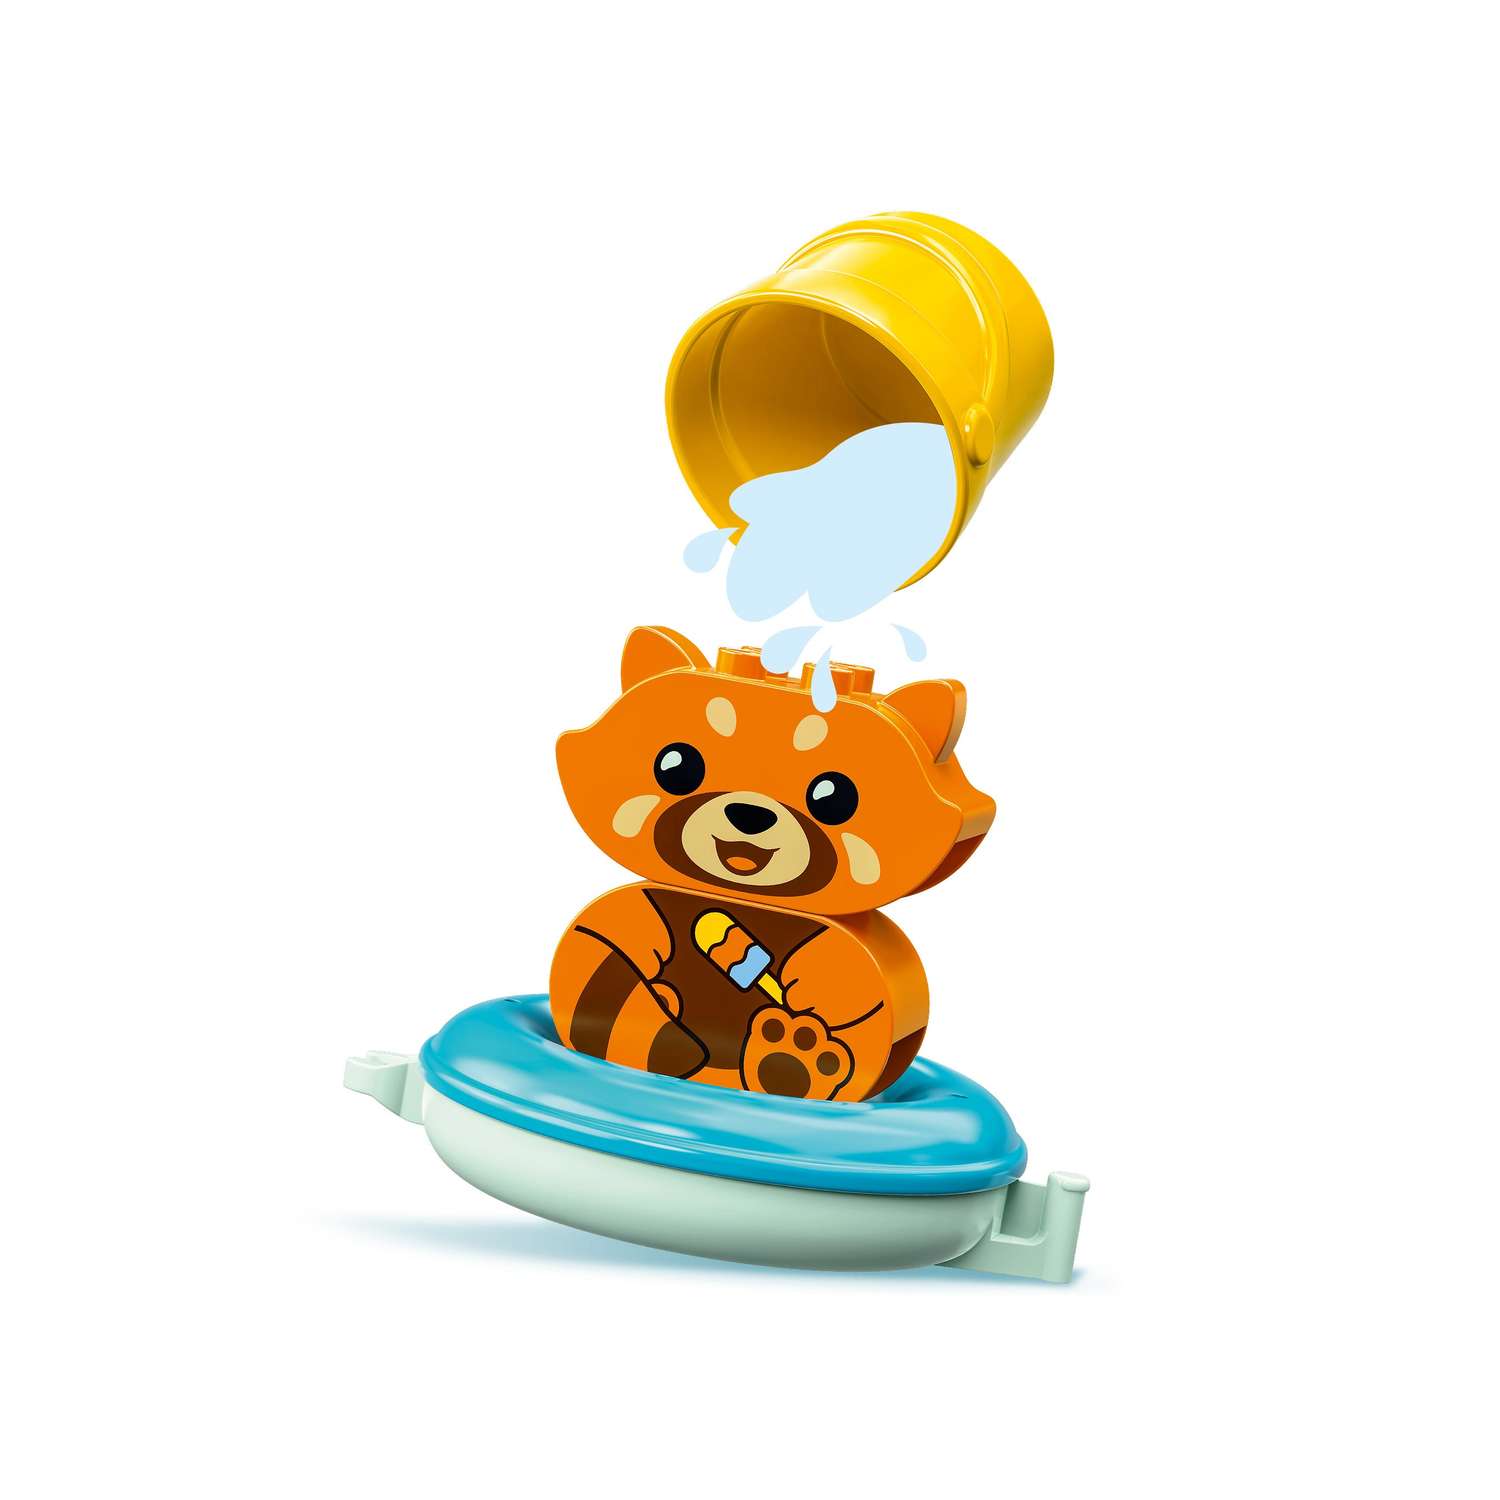 Конструктор LEGO Duplo Bath Time Fun Floating Приключения в ванной Красная панда на плоту - фото 2